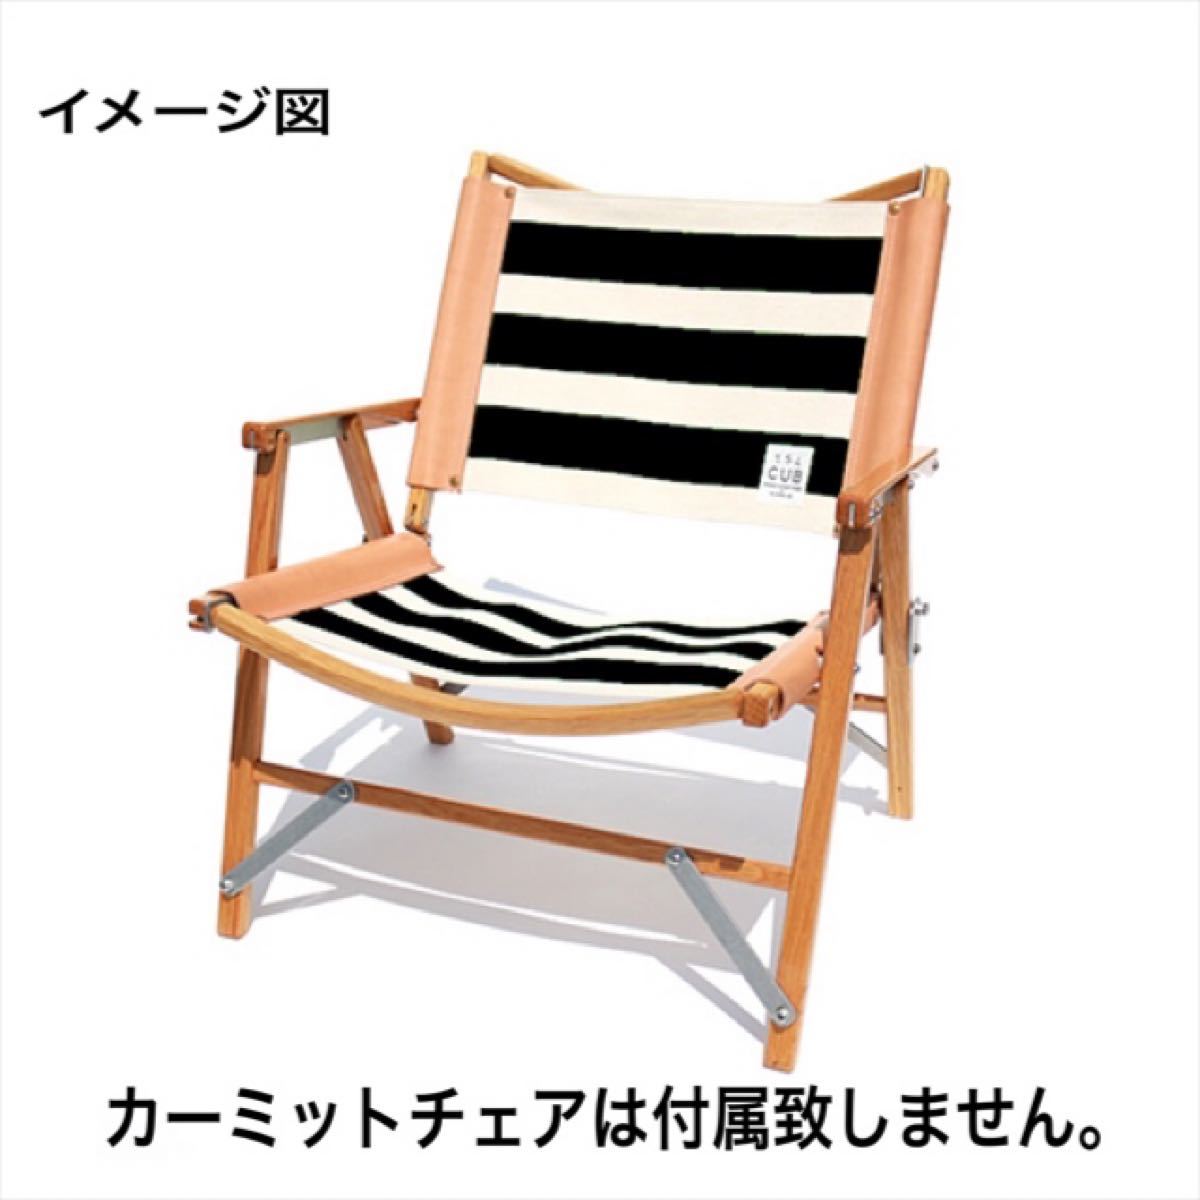 ☆未使用品☆ T.S.L CUB kermit chair cover / カーミットチェア 張り替えシート 